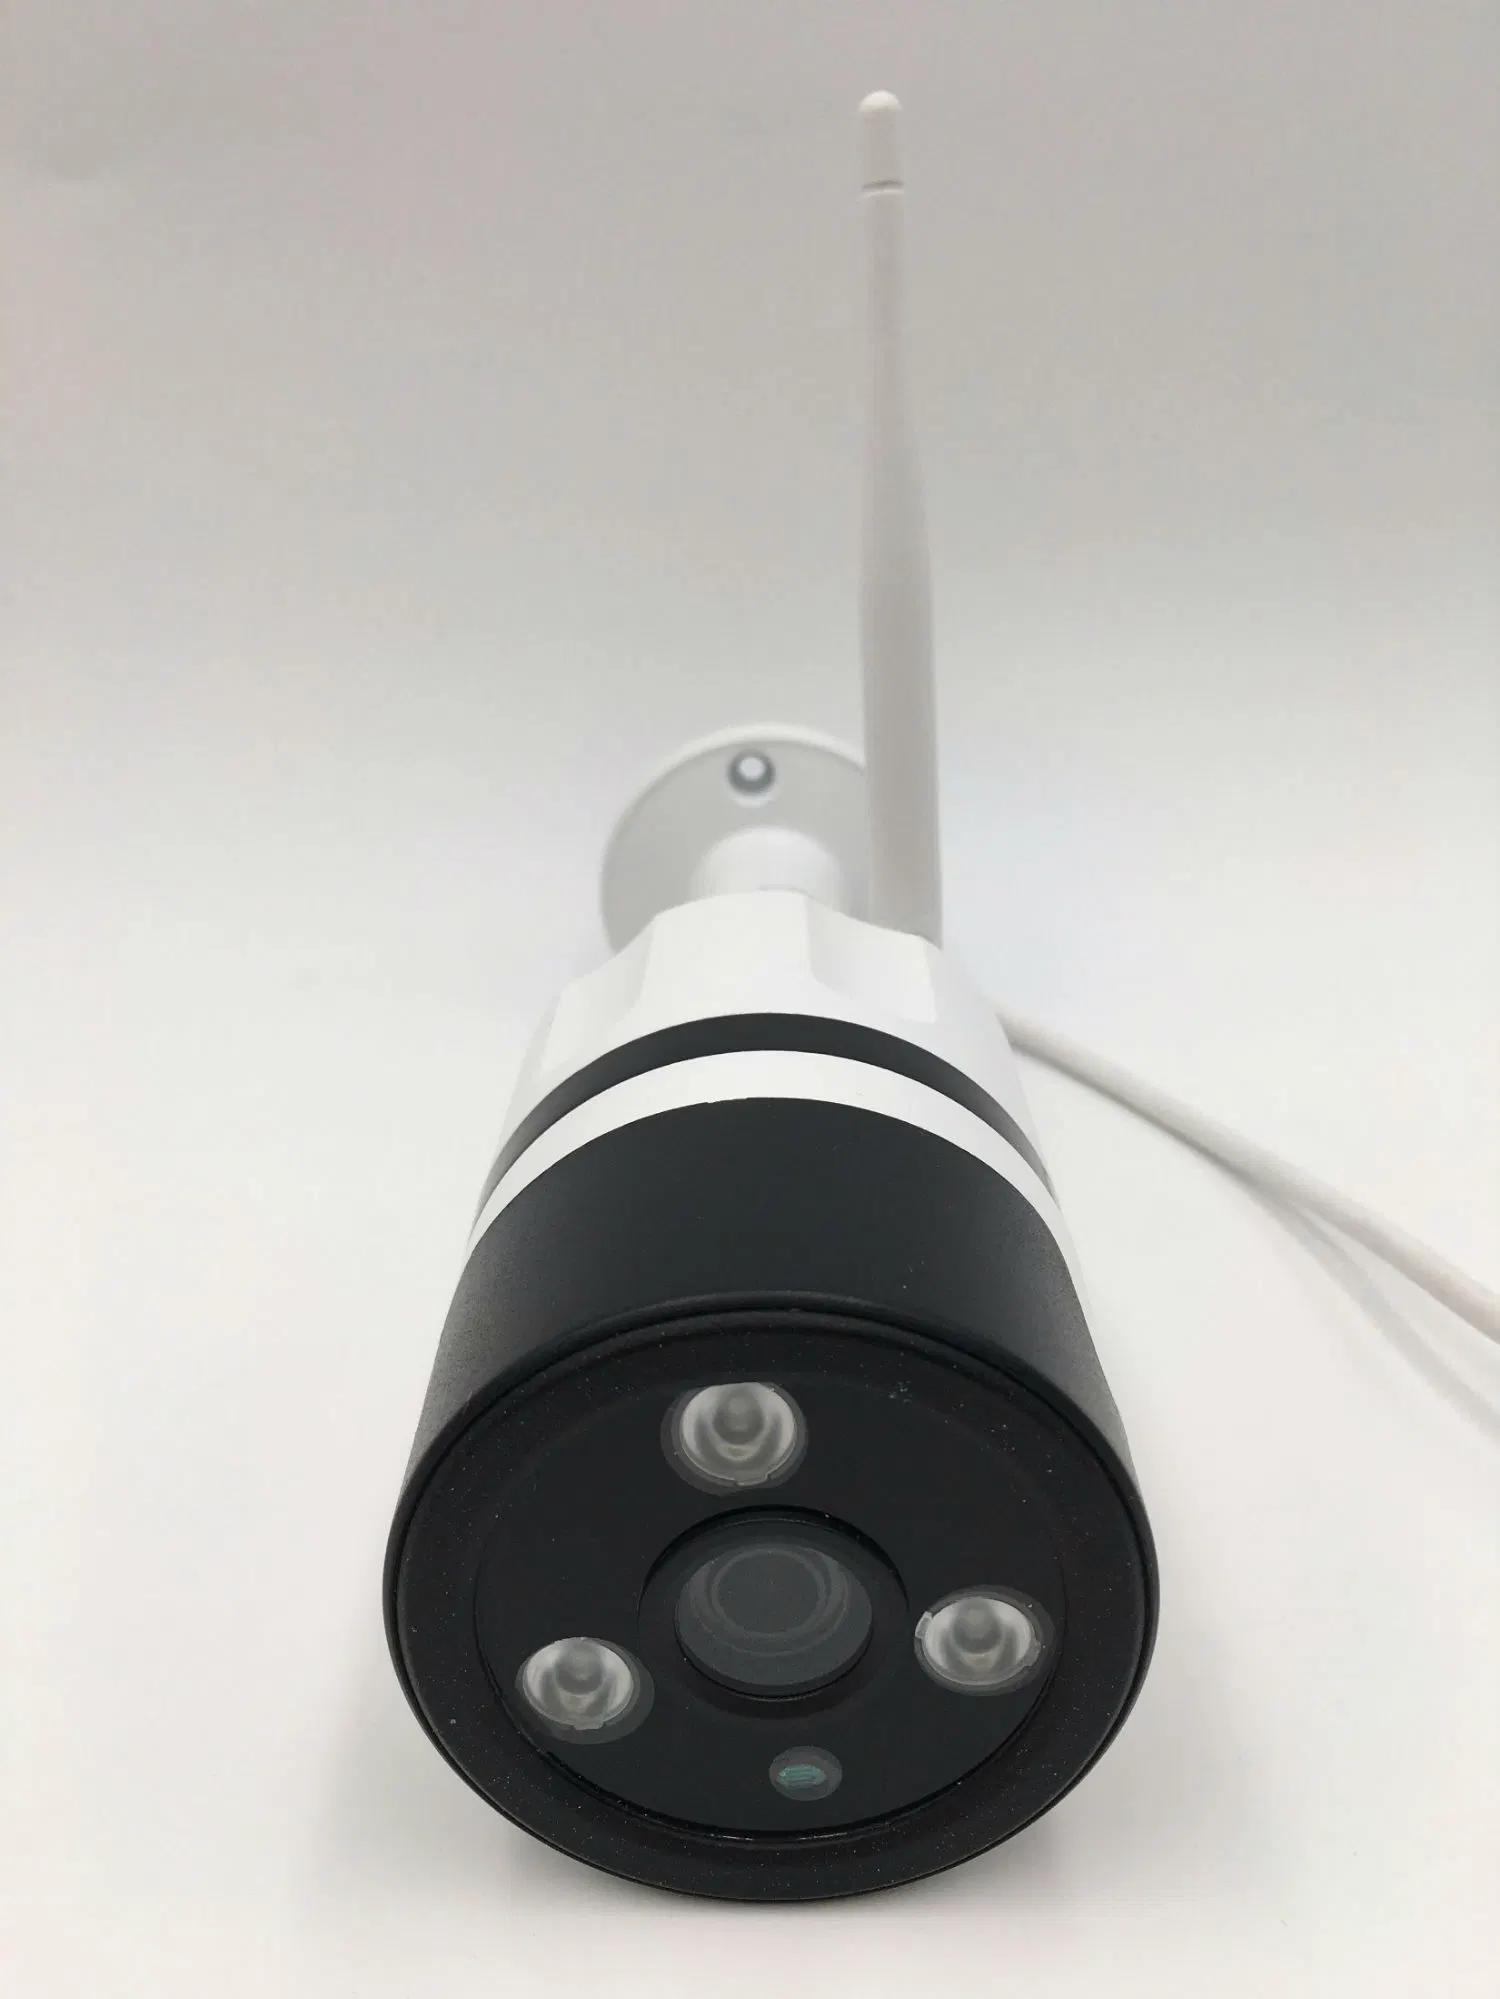 علامة تجارية لشركة توزي للمراقبة الخارجية كاميرا IP WiFi بدقة عالية الوضوح بدقة 1.3 ميجابكسل بطاقة SD من كاميرا Cam تخزين لاسلكي/ سلكي مقاومة للعقبات كاميرا الأمان